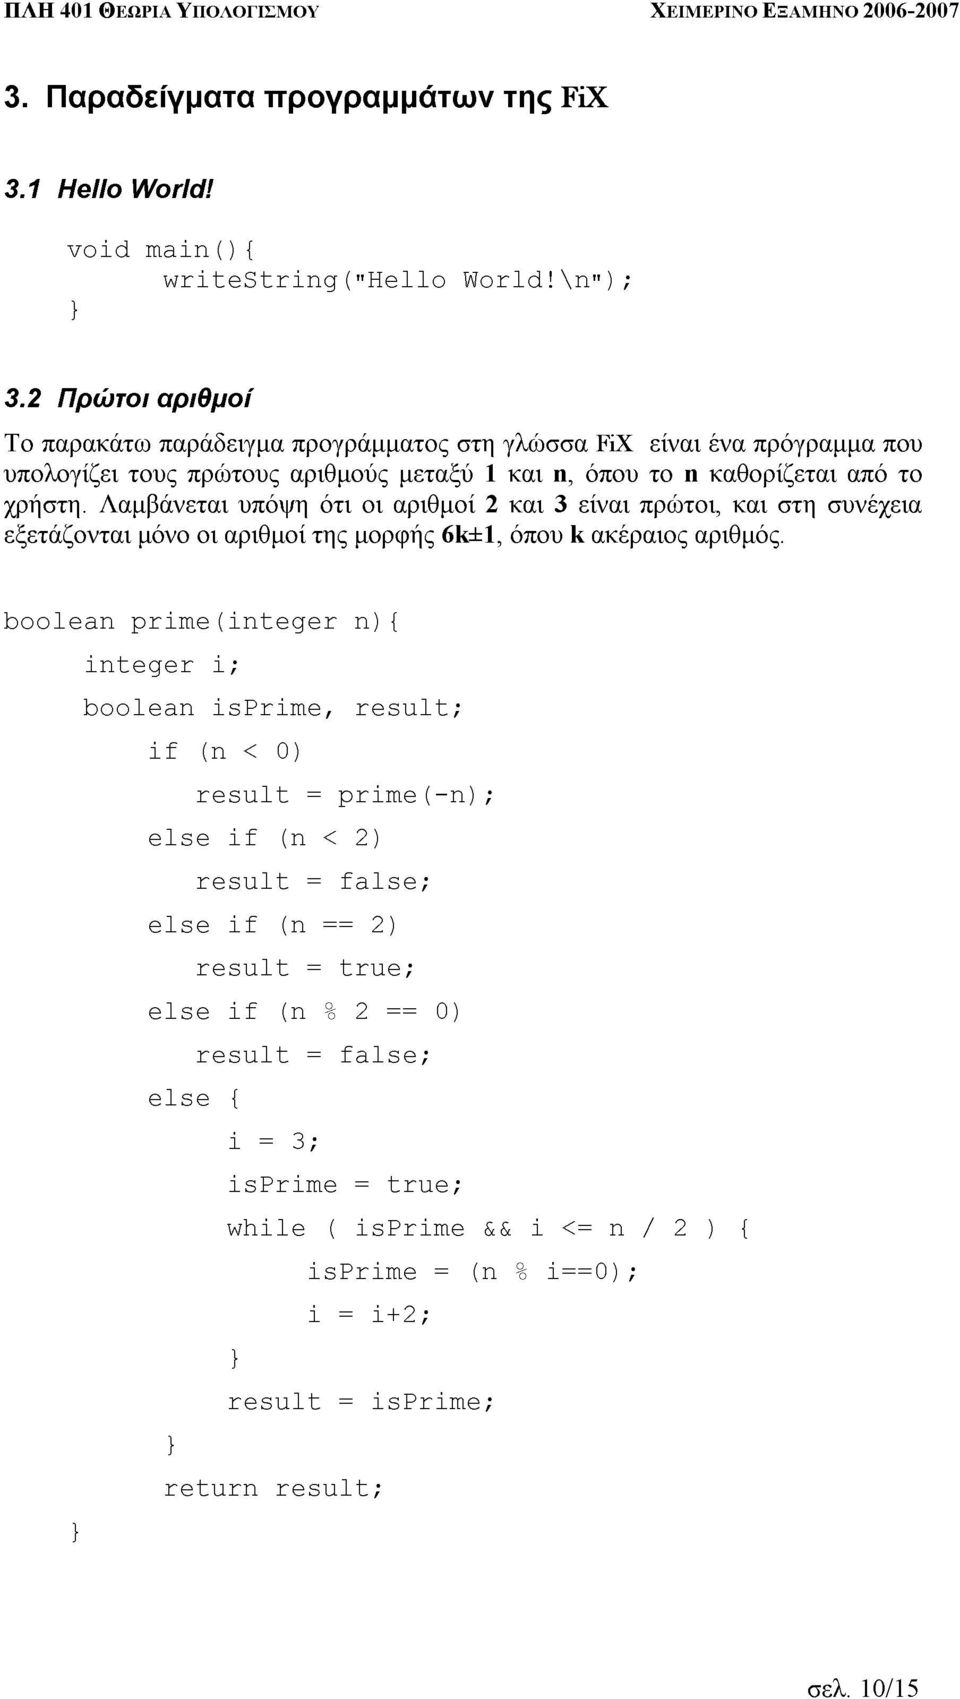 παρακάτω τους παράδειγµα πρώτους αριθµούς προγράµµατος µεταξύ στη 1 γλώσσα n, όπου FiX είναι n ένα καθορίζεται πρόγραµµα από που integer Λαµβάνεται µόνο οι αριθµοί υπόψη της ότι µορφής